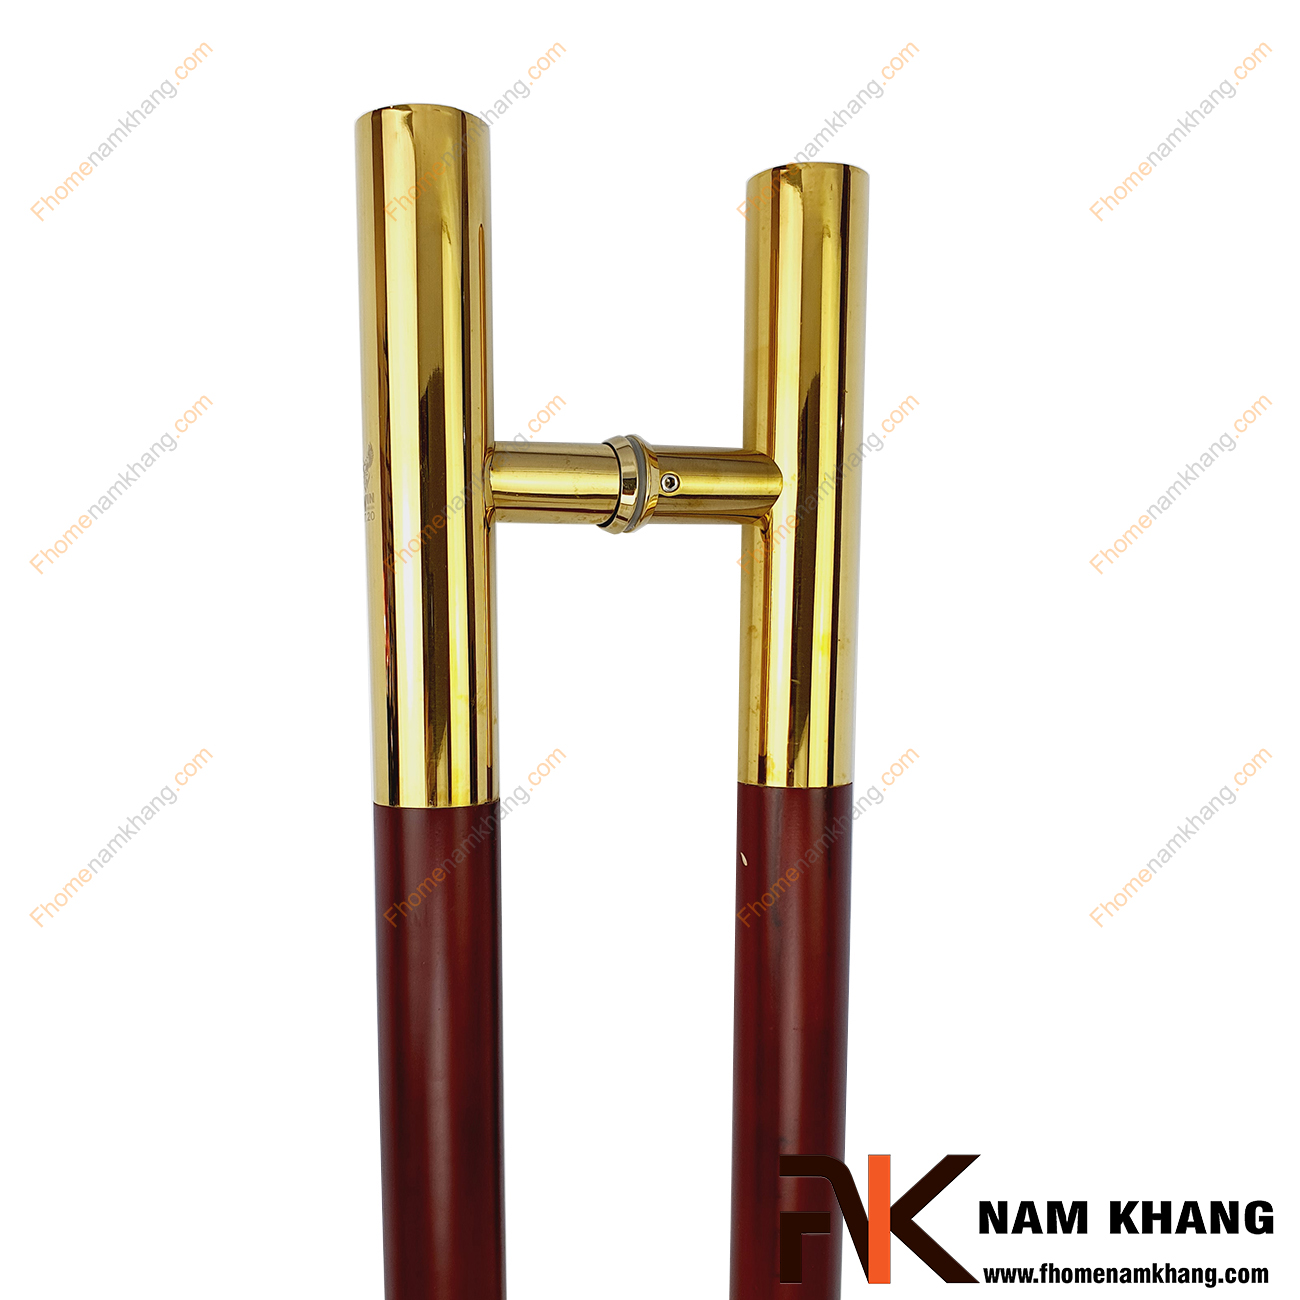 Tay nắm cửa chính màu inox vàng bóng phối gỗ đỏ NKC003-GV là sản phẩm tay nắm tủ đồng tâm dùng cho nhiều loại cửa vời đầy đủ các chất liệu theo thiết kế nội thất.